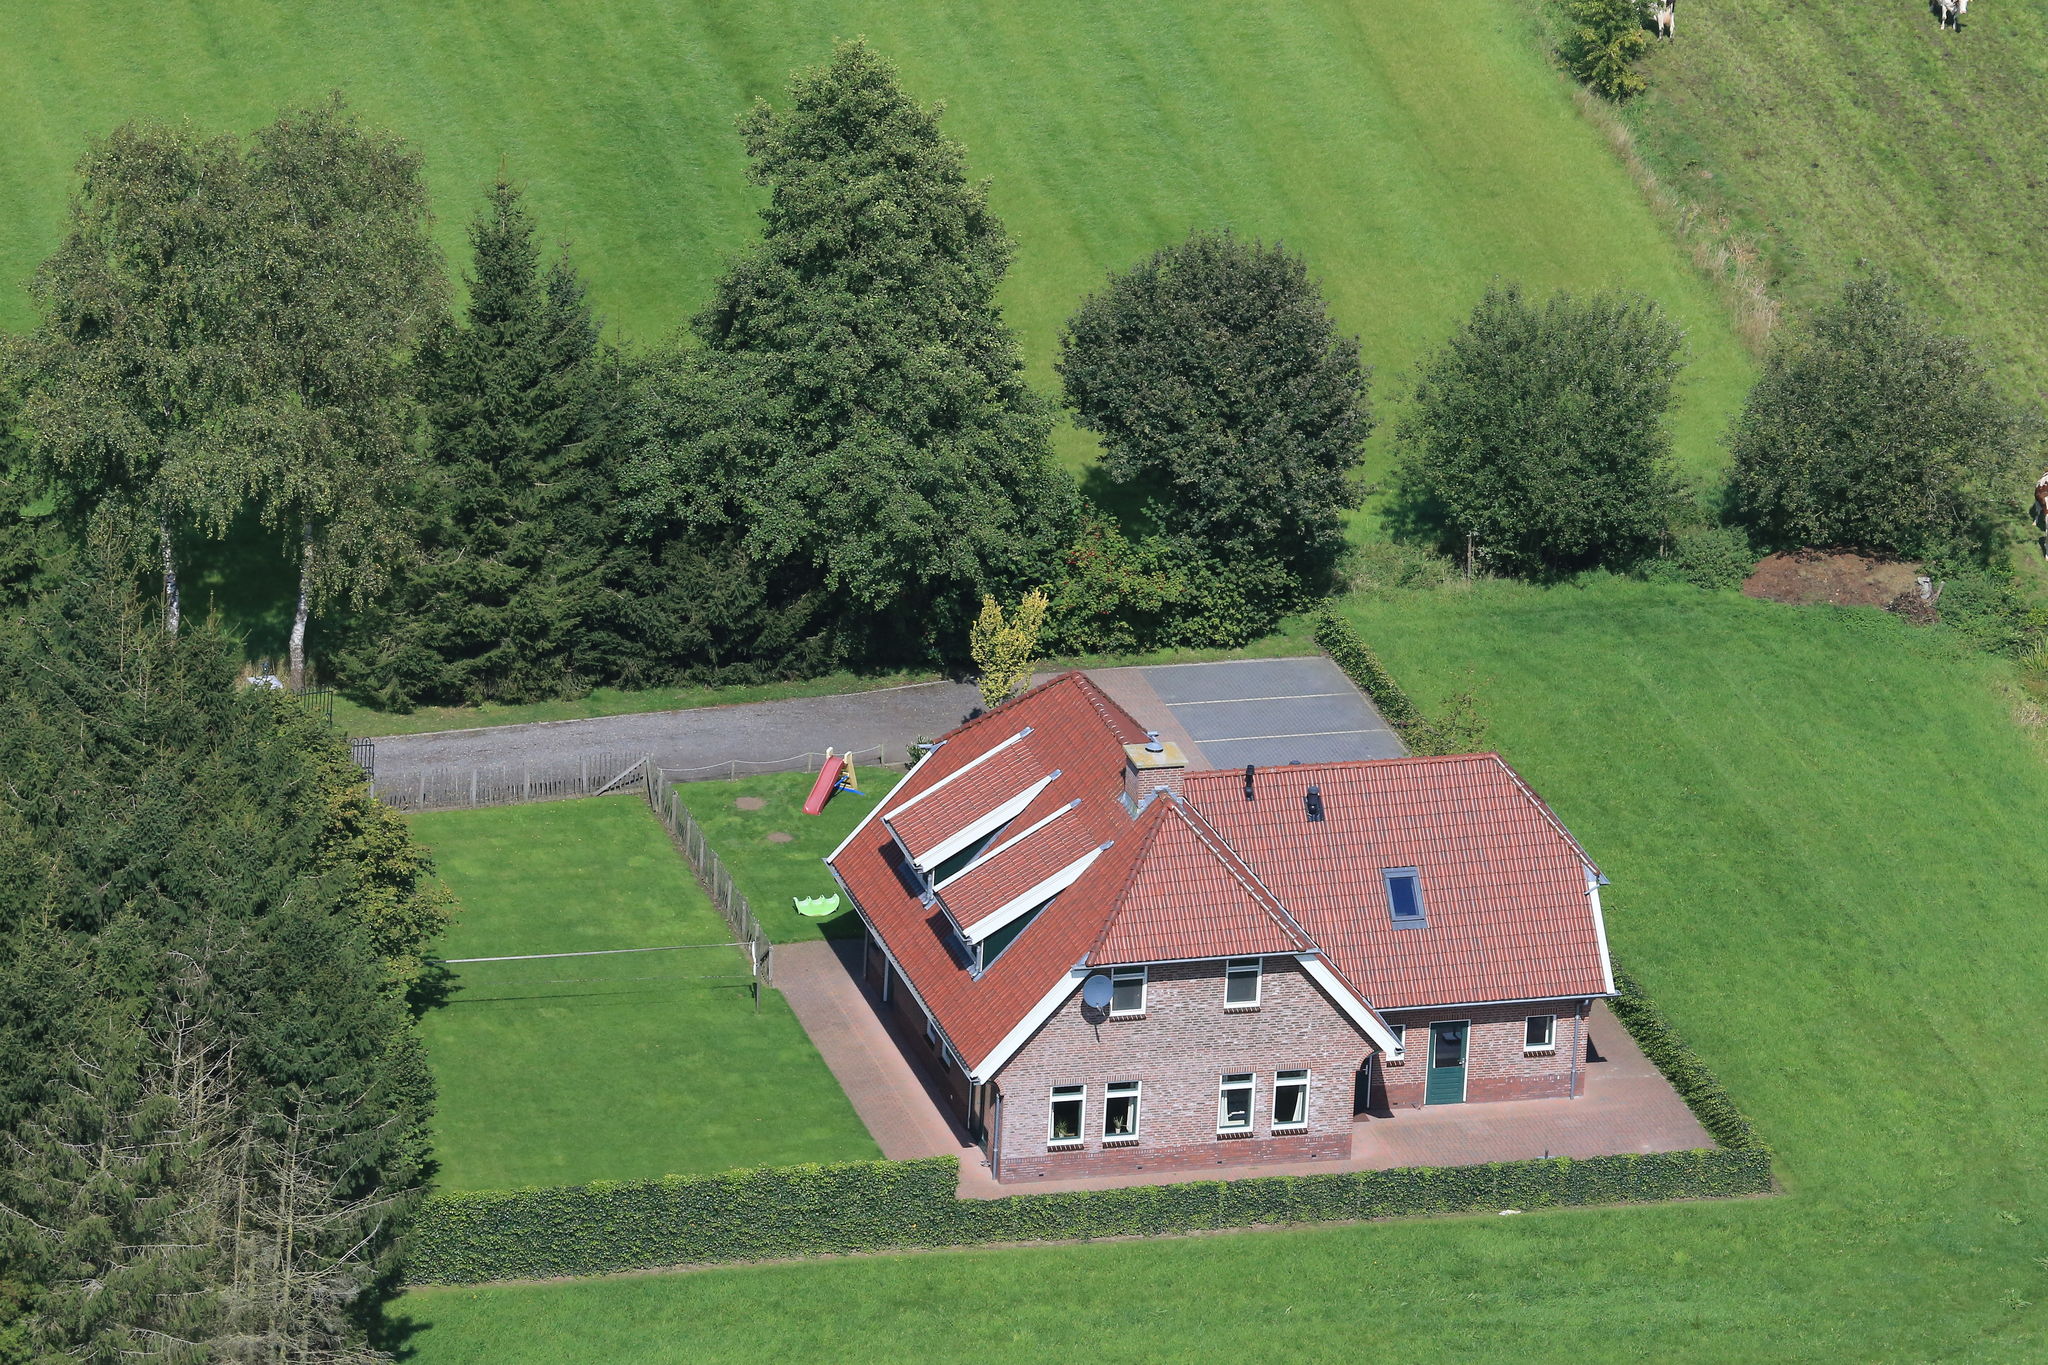 Spacious farmhouse in Achterhoek with play loft